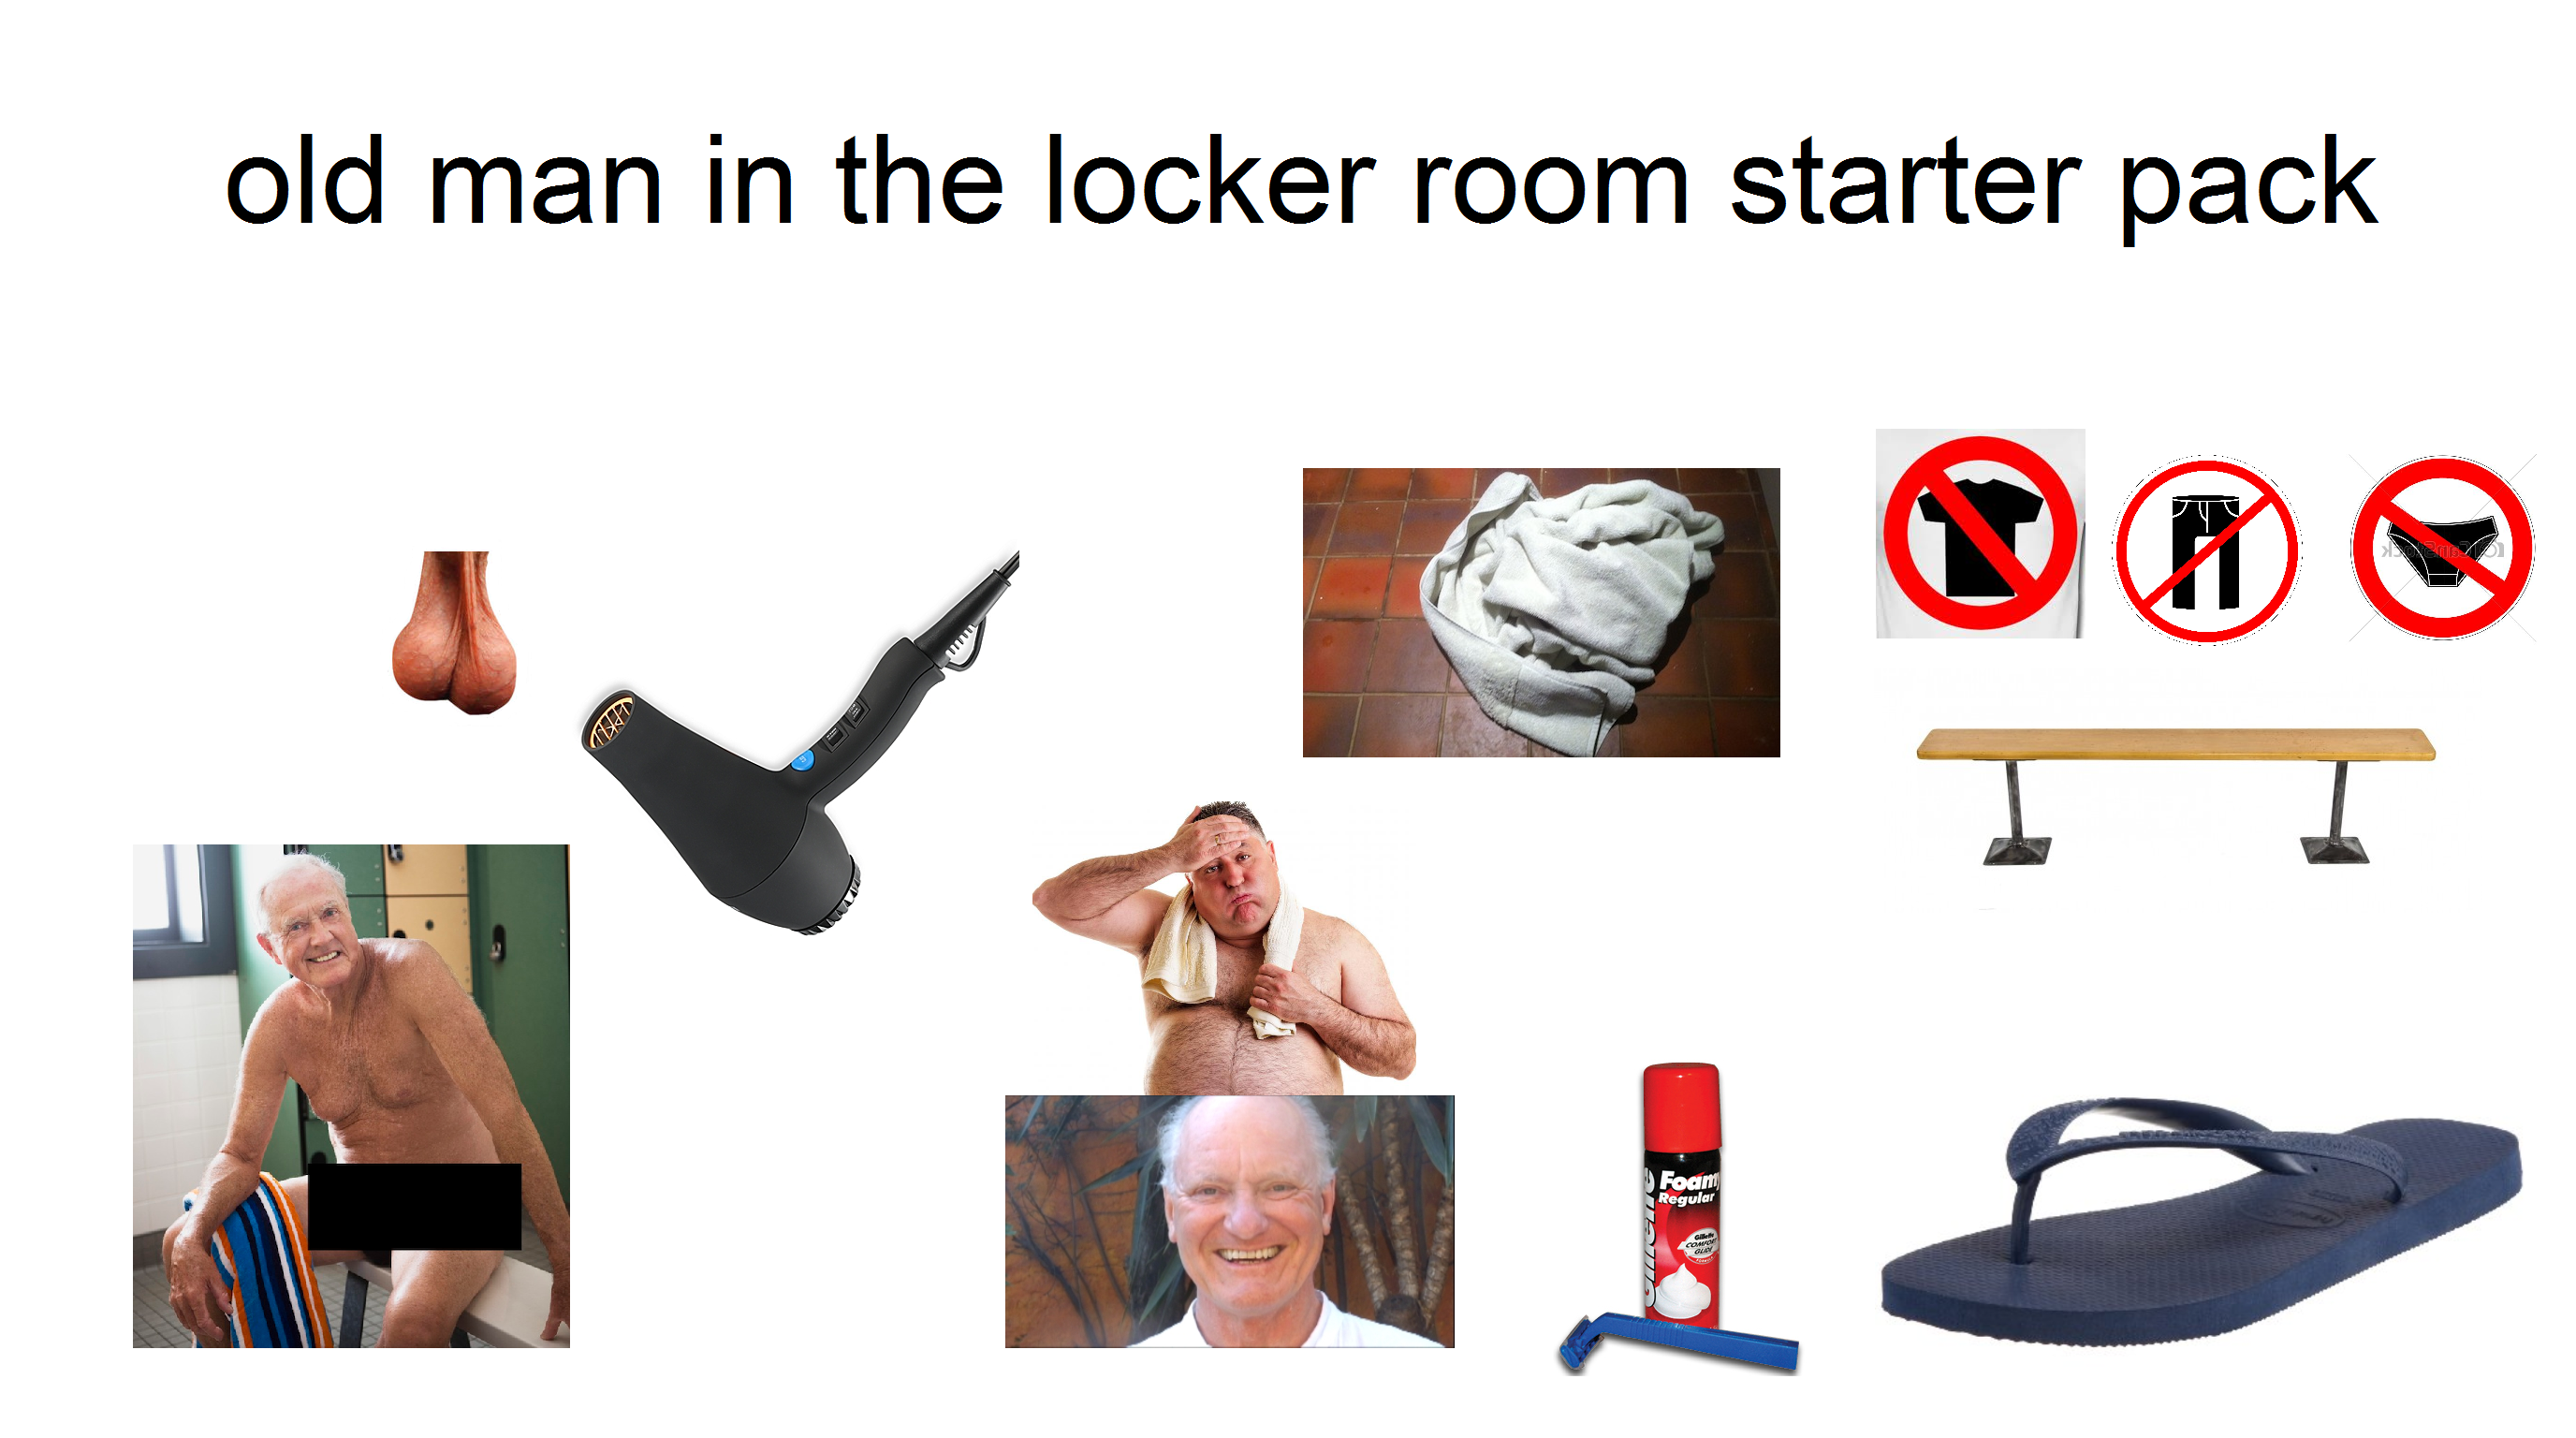 Old men locker room